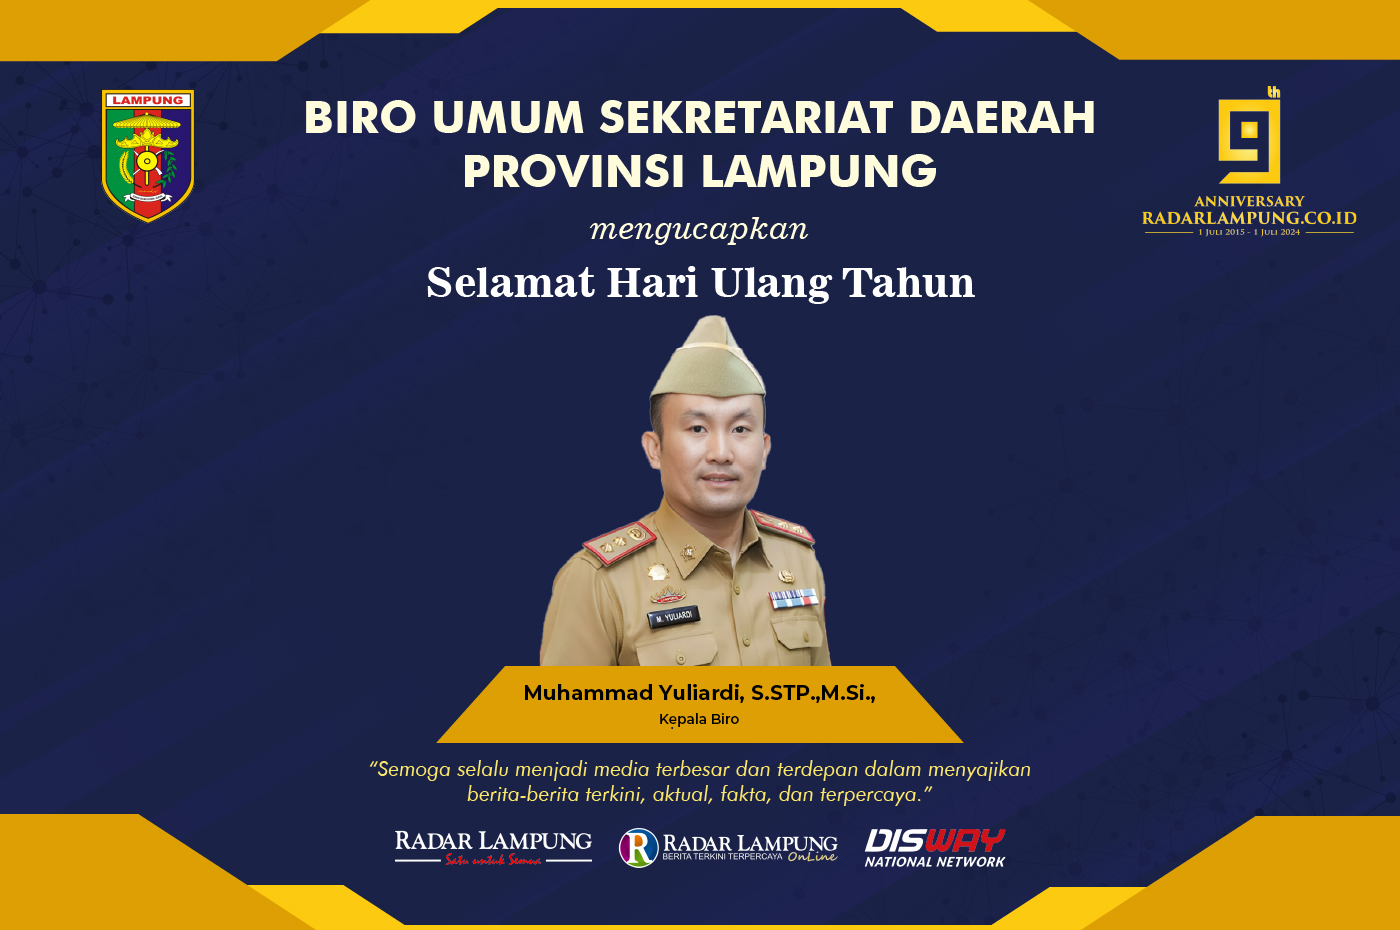 Biro Umum Sekretariat Daerah Provinsi Lampung: Selamat Ulang Tahun ke-9 Radar Lampung Online